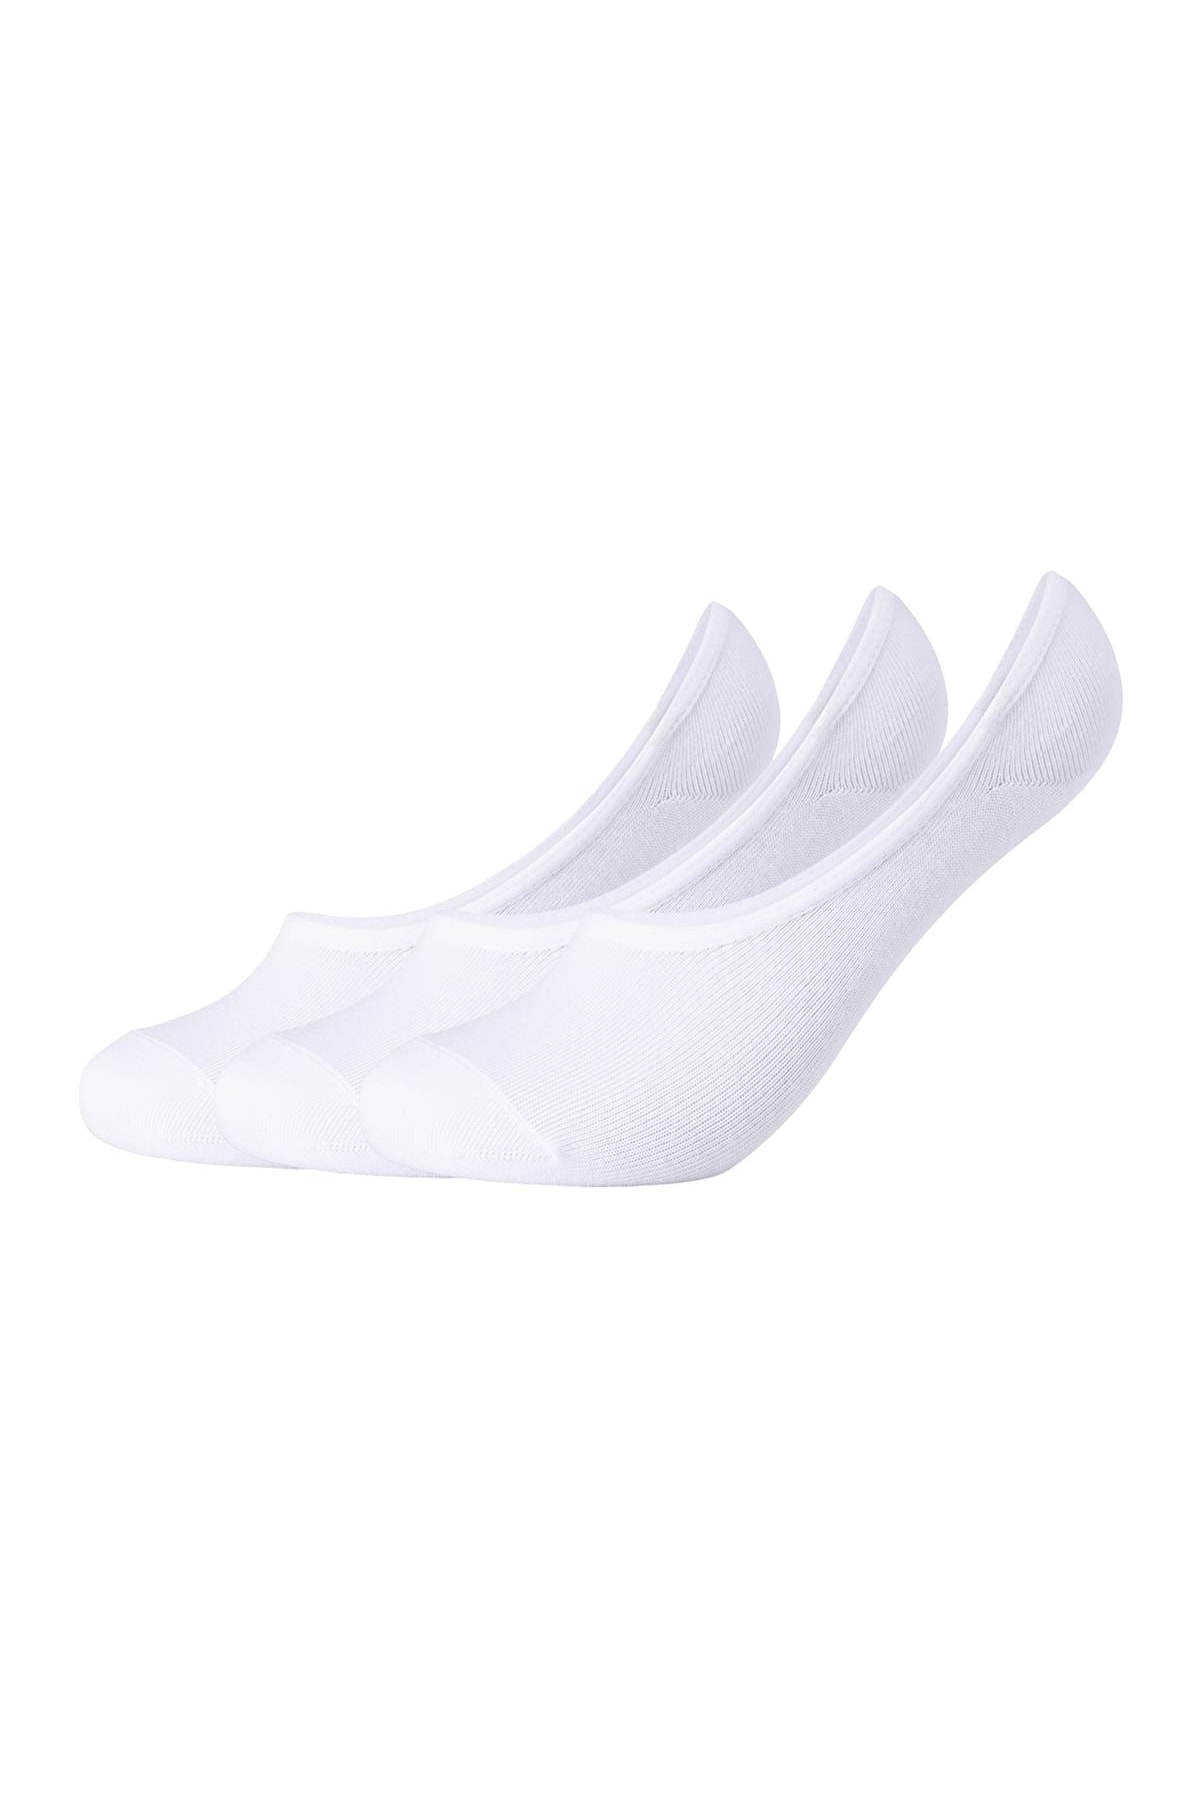 S. OLİVER Socken Weiß Casual Fast ausverkauft